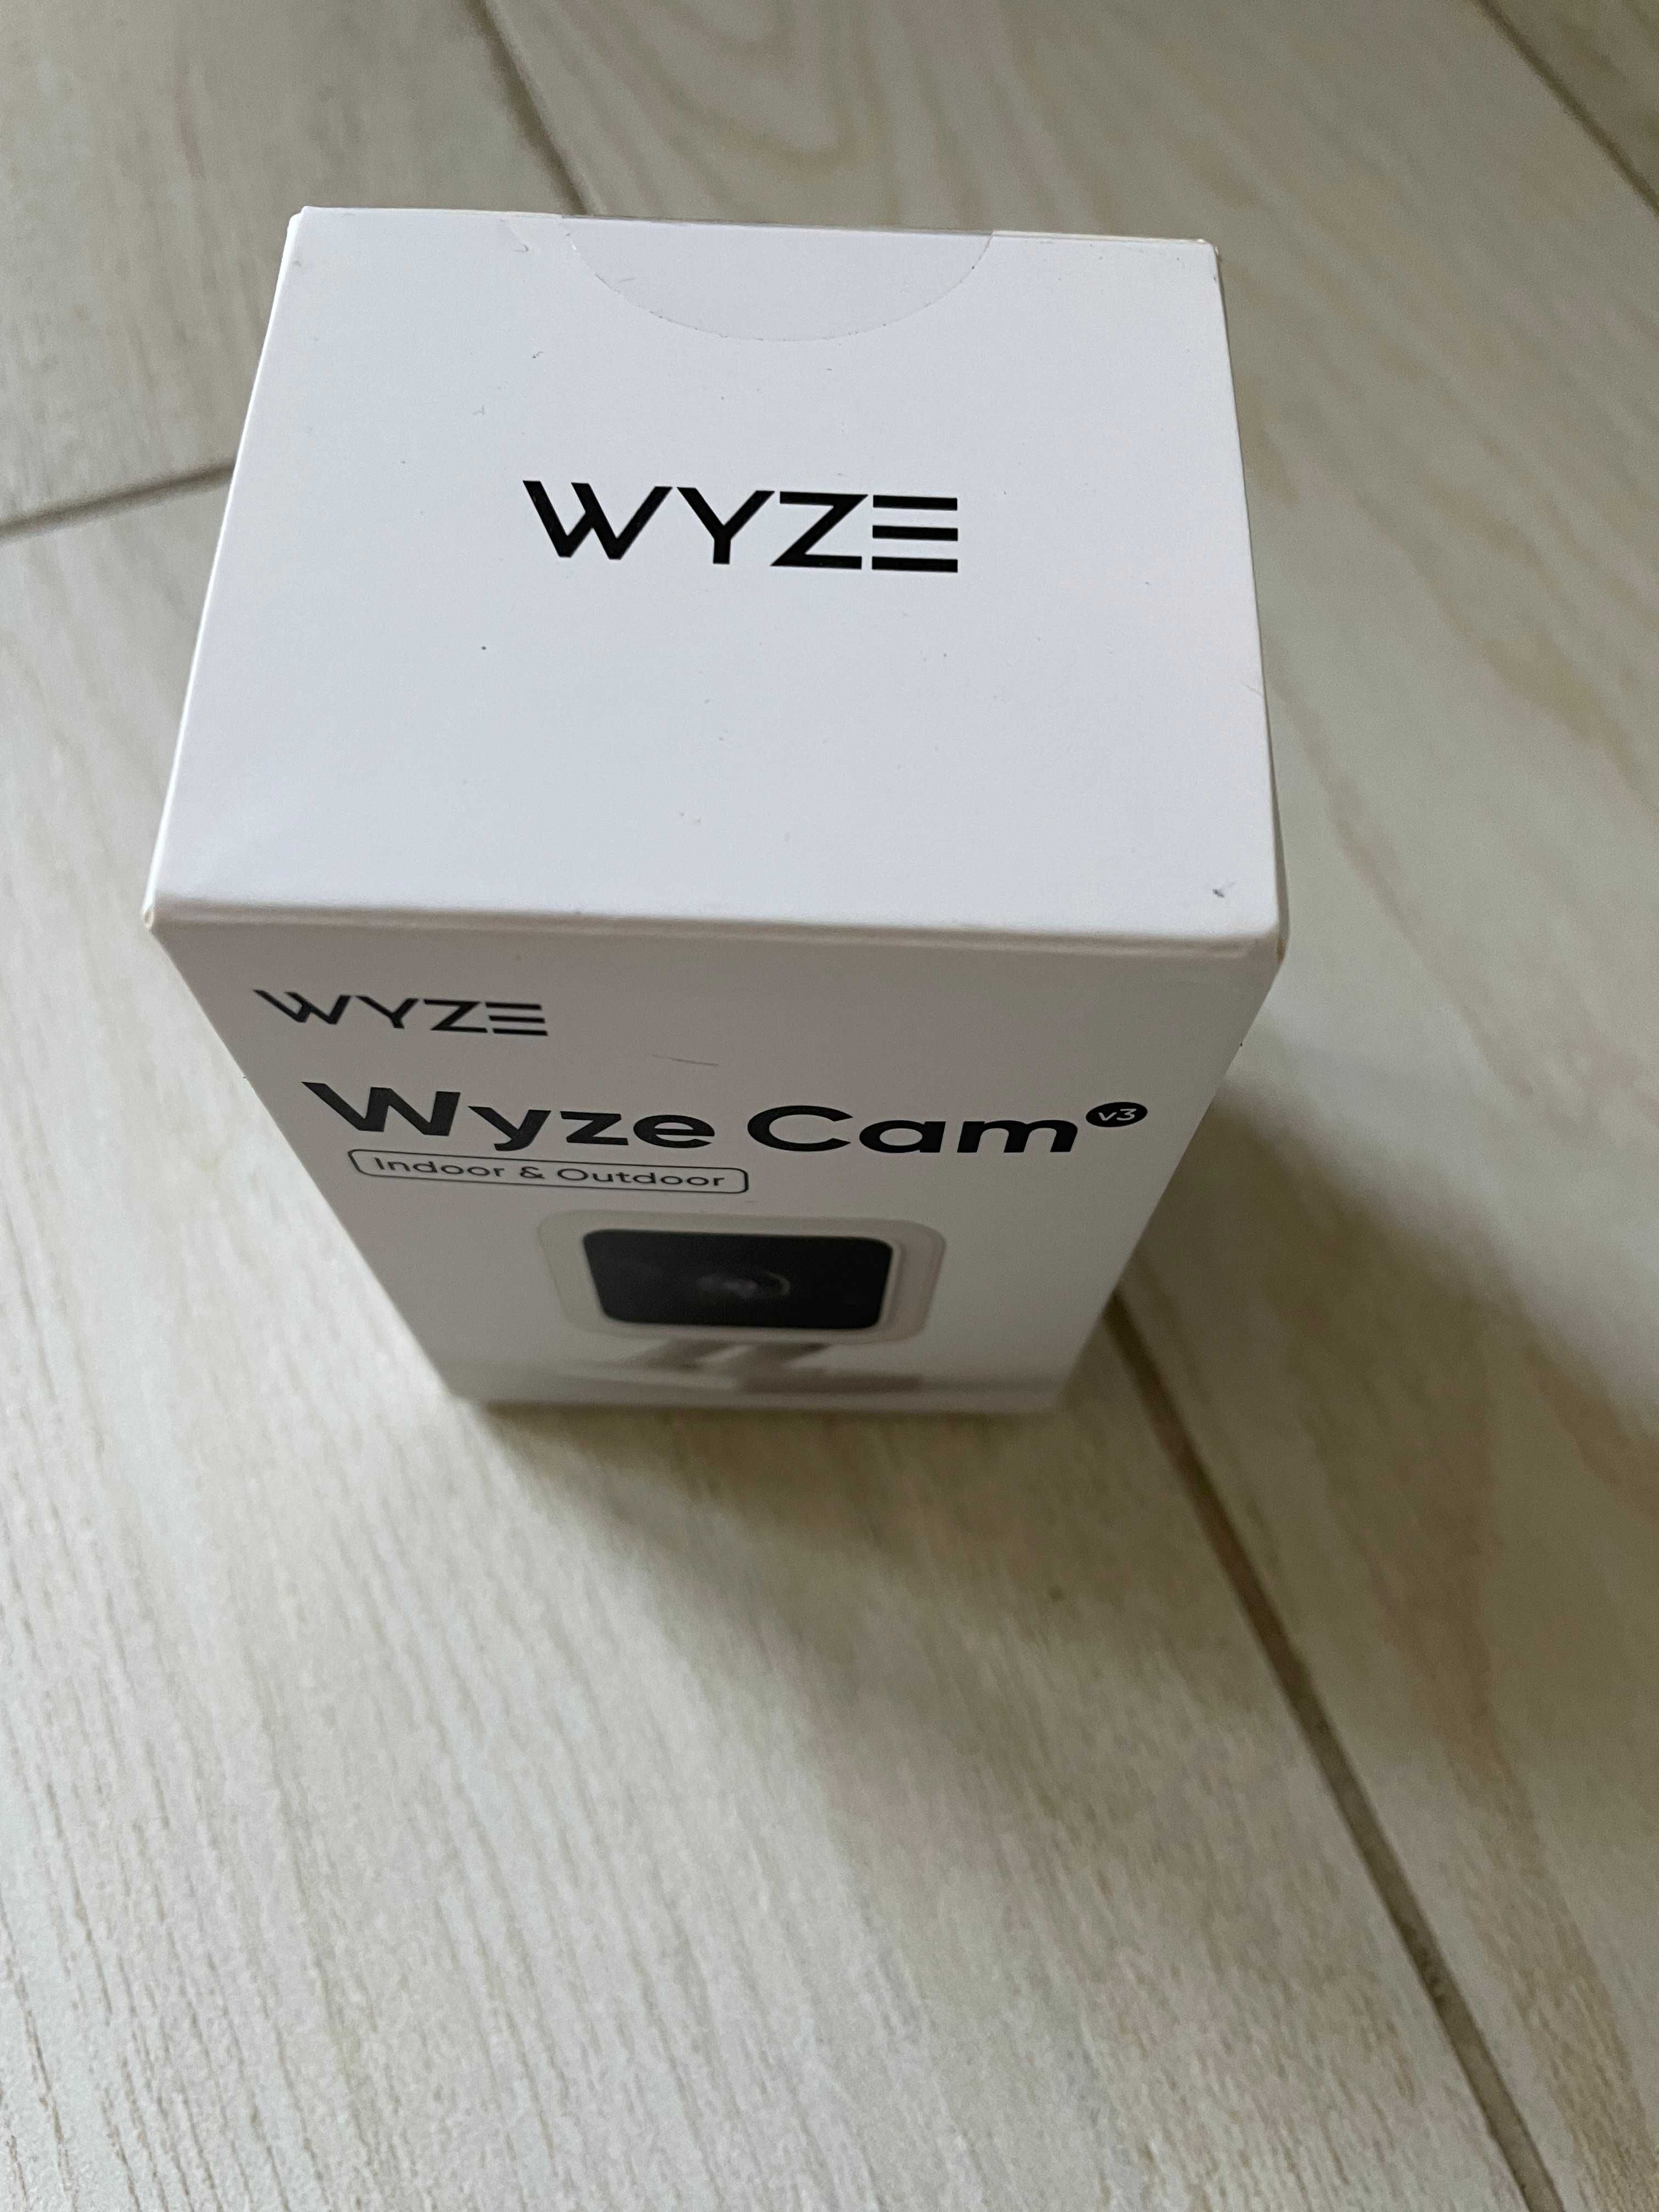 Камера Wyze Cam v3,  Wyze Pan V3 вътрешна и външна IP камера, бебефон